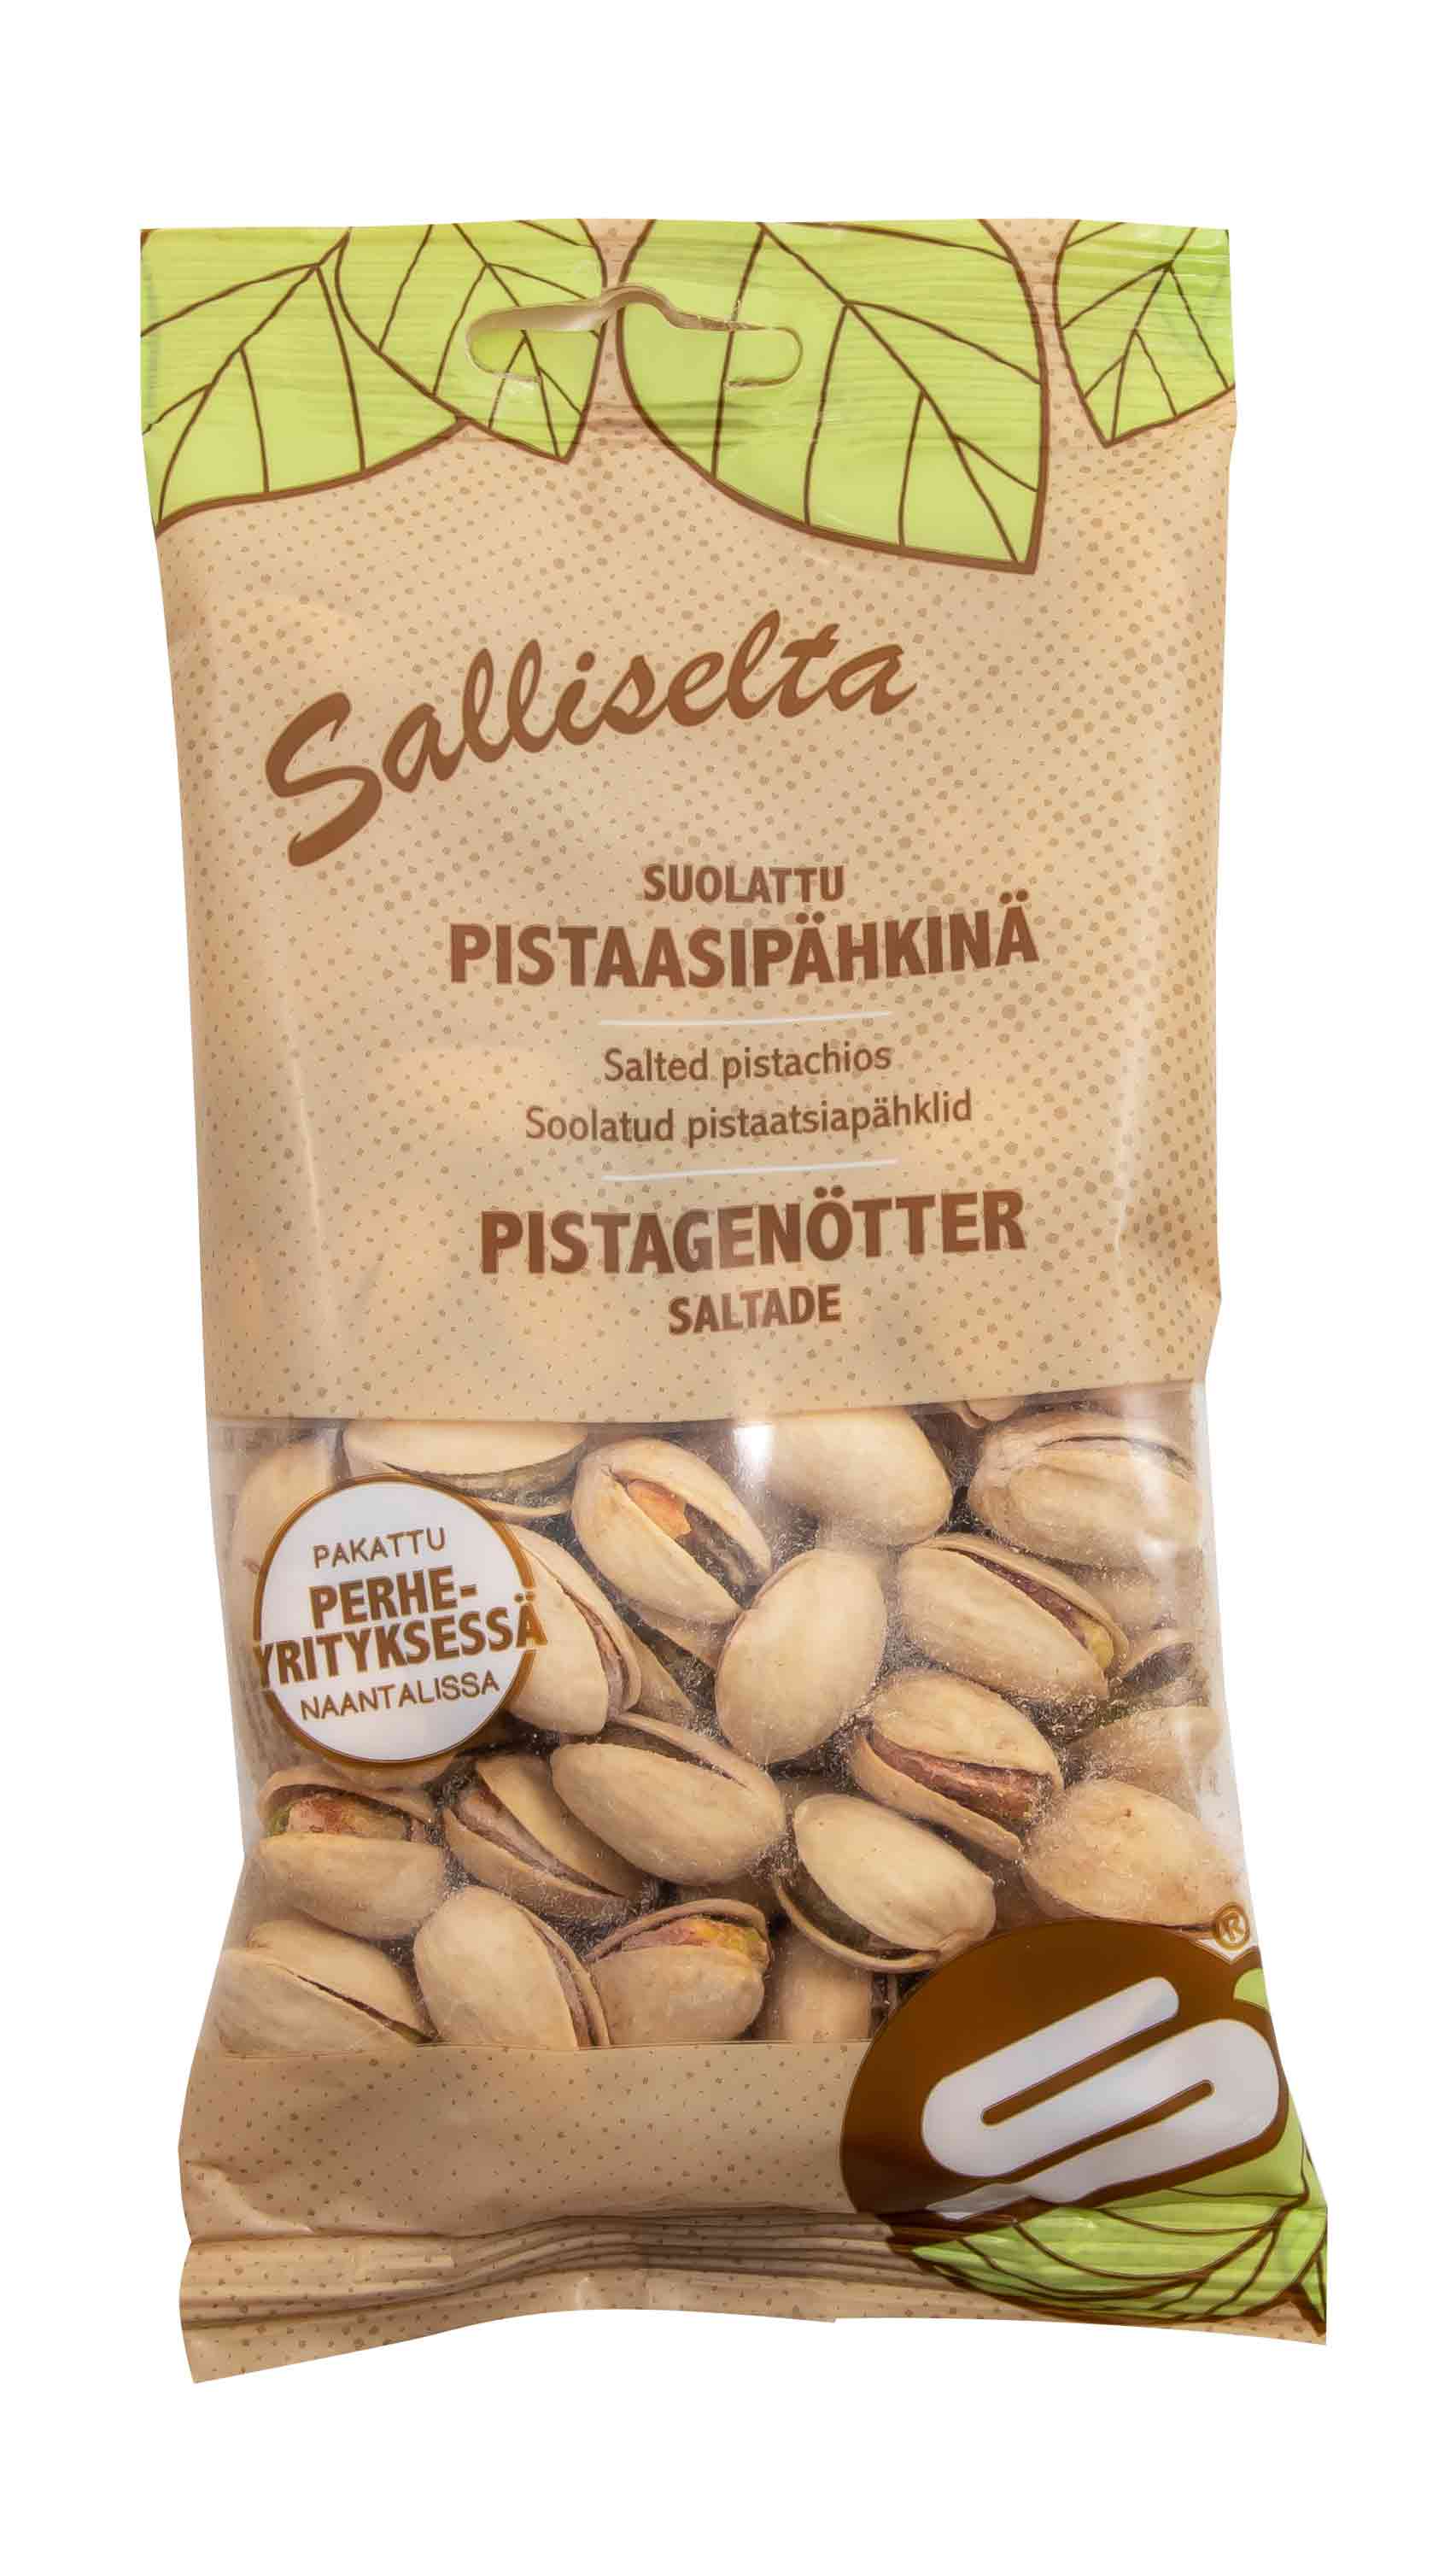 Pistagenötter saltade 80g